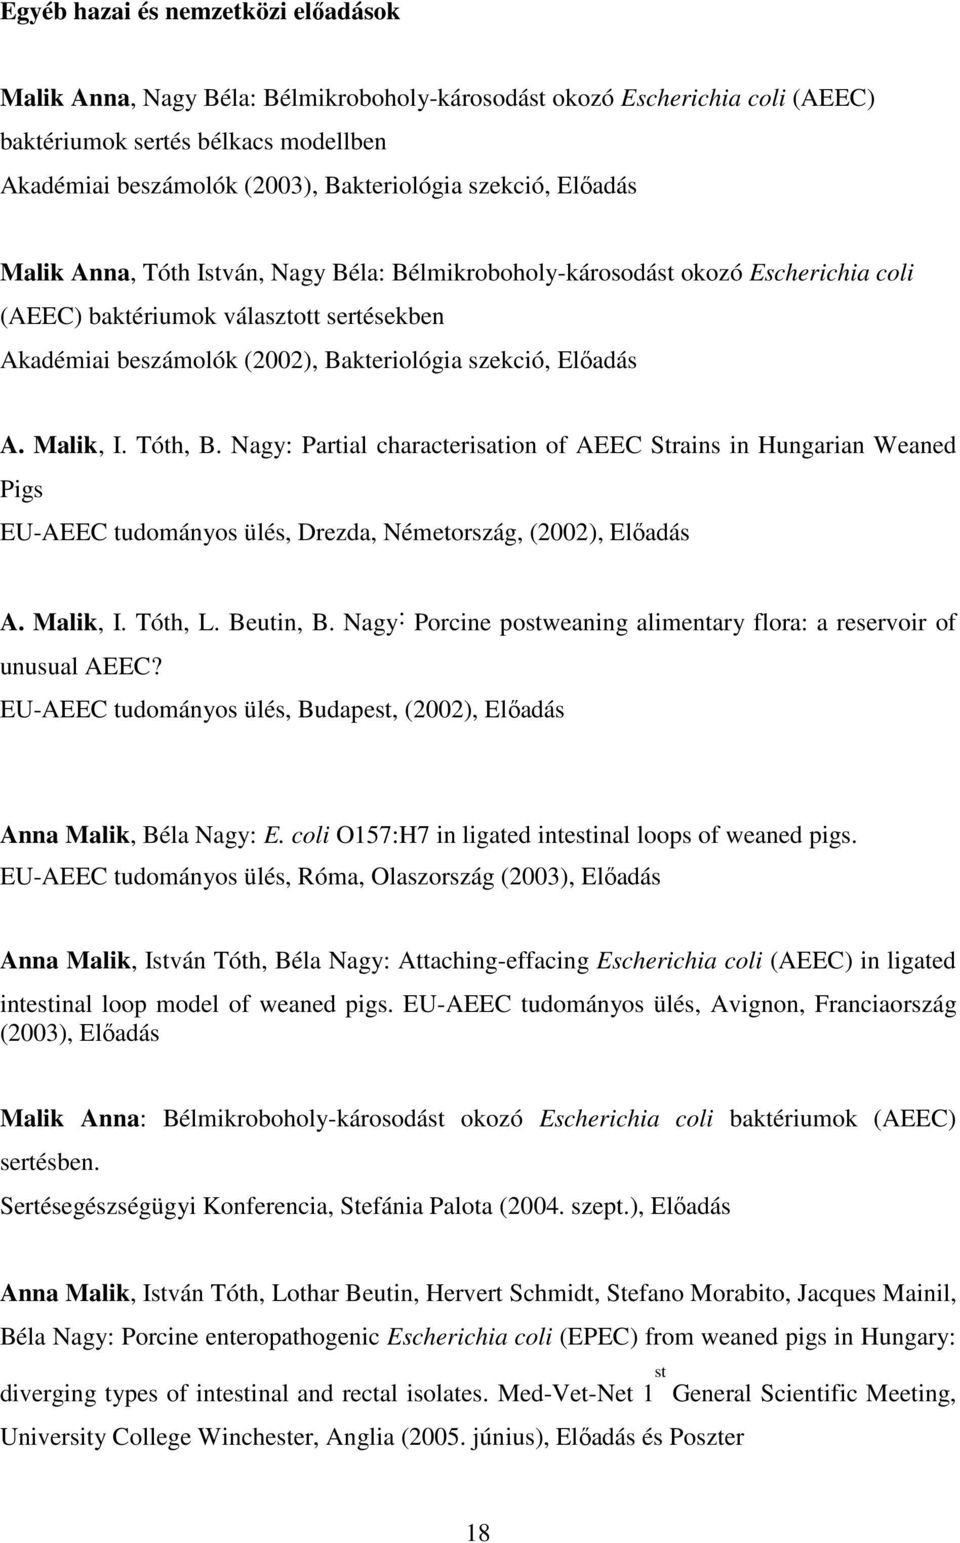 Előadás A. Malik, I. Tóth, B. Nagy: Partial characterisation of AEEC Strains in Hungarian Weaned Pigs EU-AEEC tudományos ülés, Drezda, Németország, (2002), Előadás A. Malik, I. Tóth, L. Beutin, B.